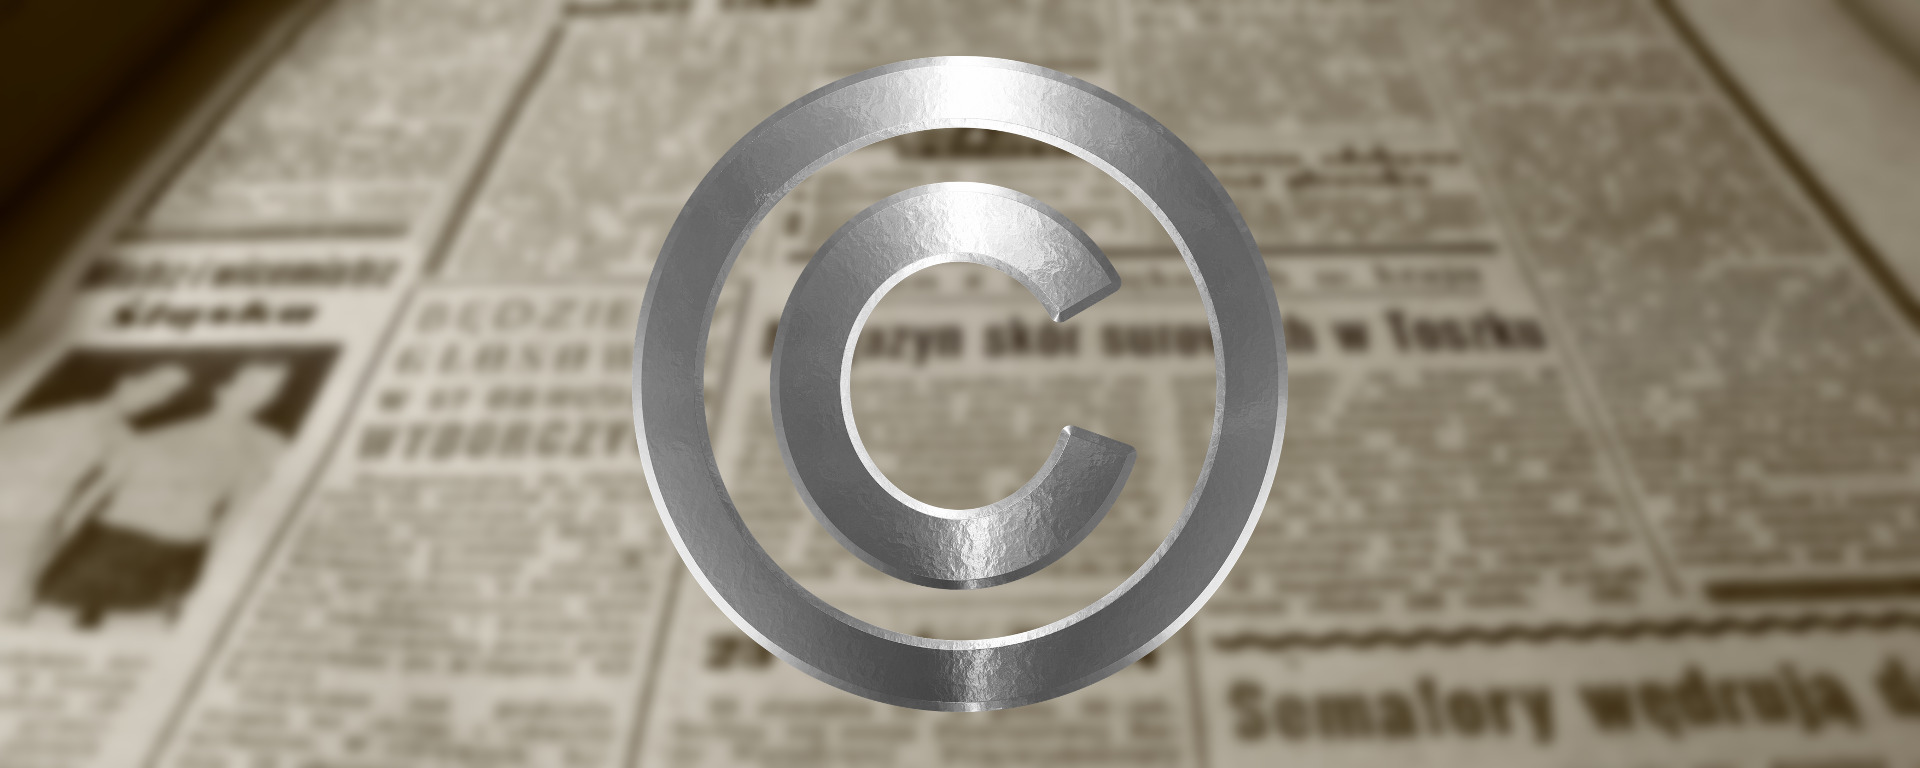 Jornalões: porquê a reforma do copyright não resolveria os problemas enfrentados